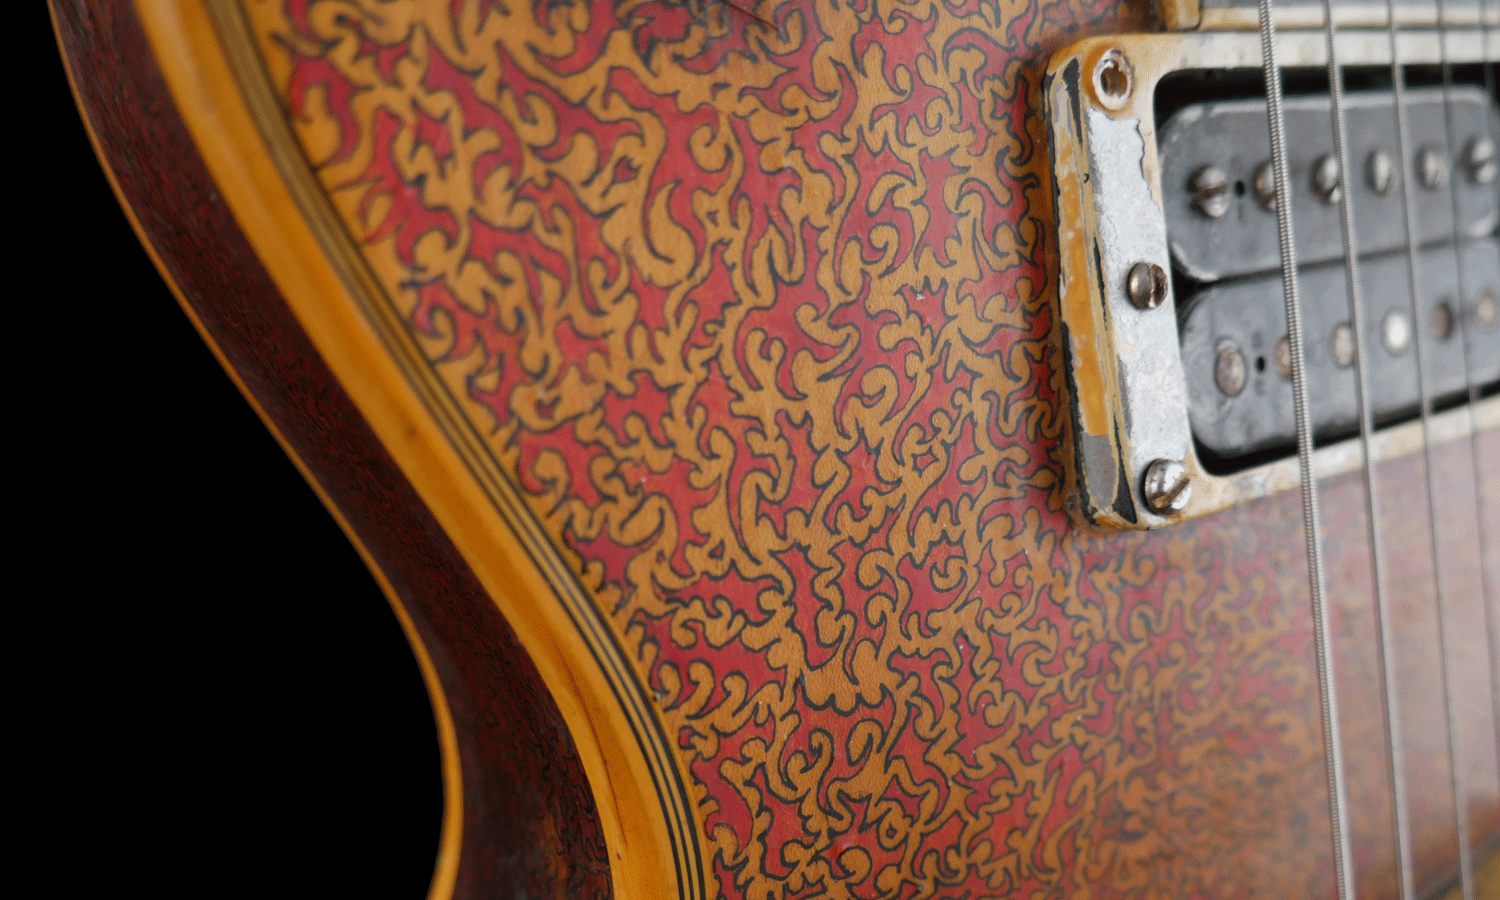 Gibson Les Paul Custom 1969 Big Friswa